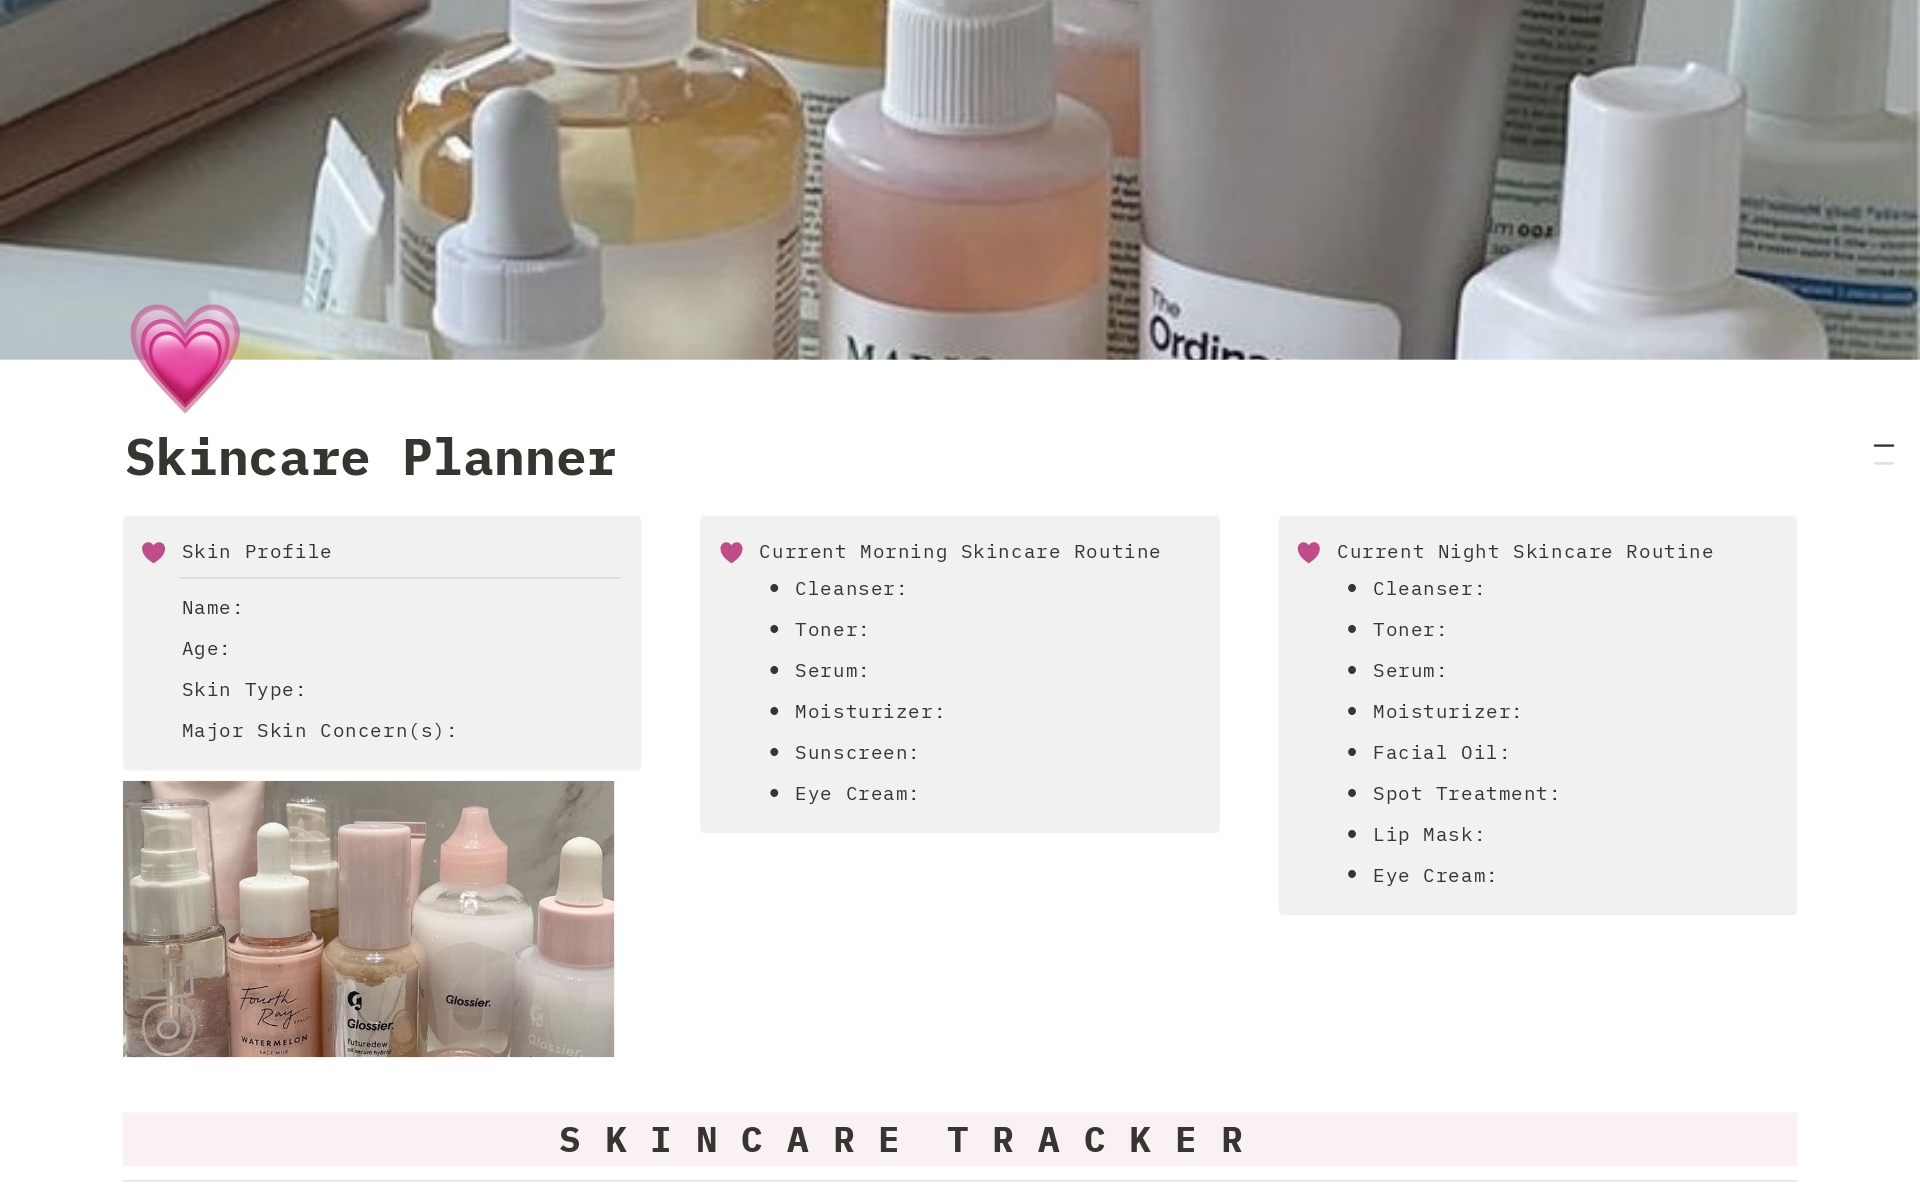 Vista previa de una plantilla para Pink Skincare Planner